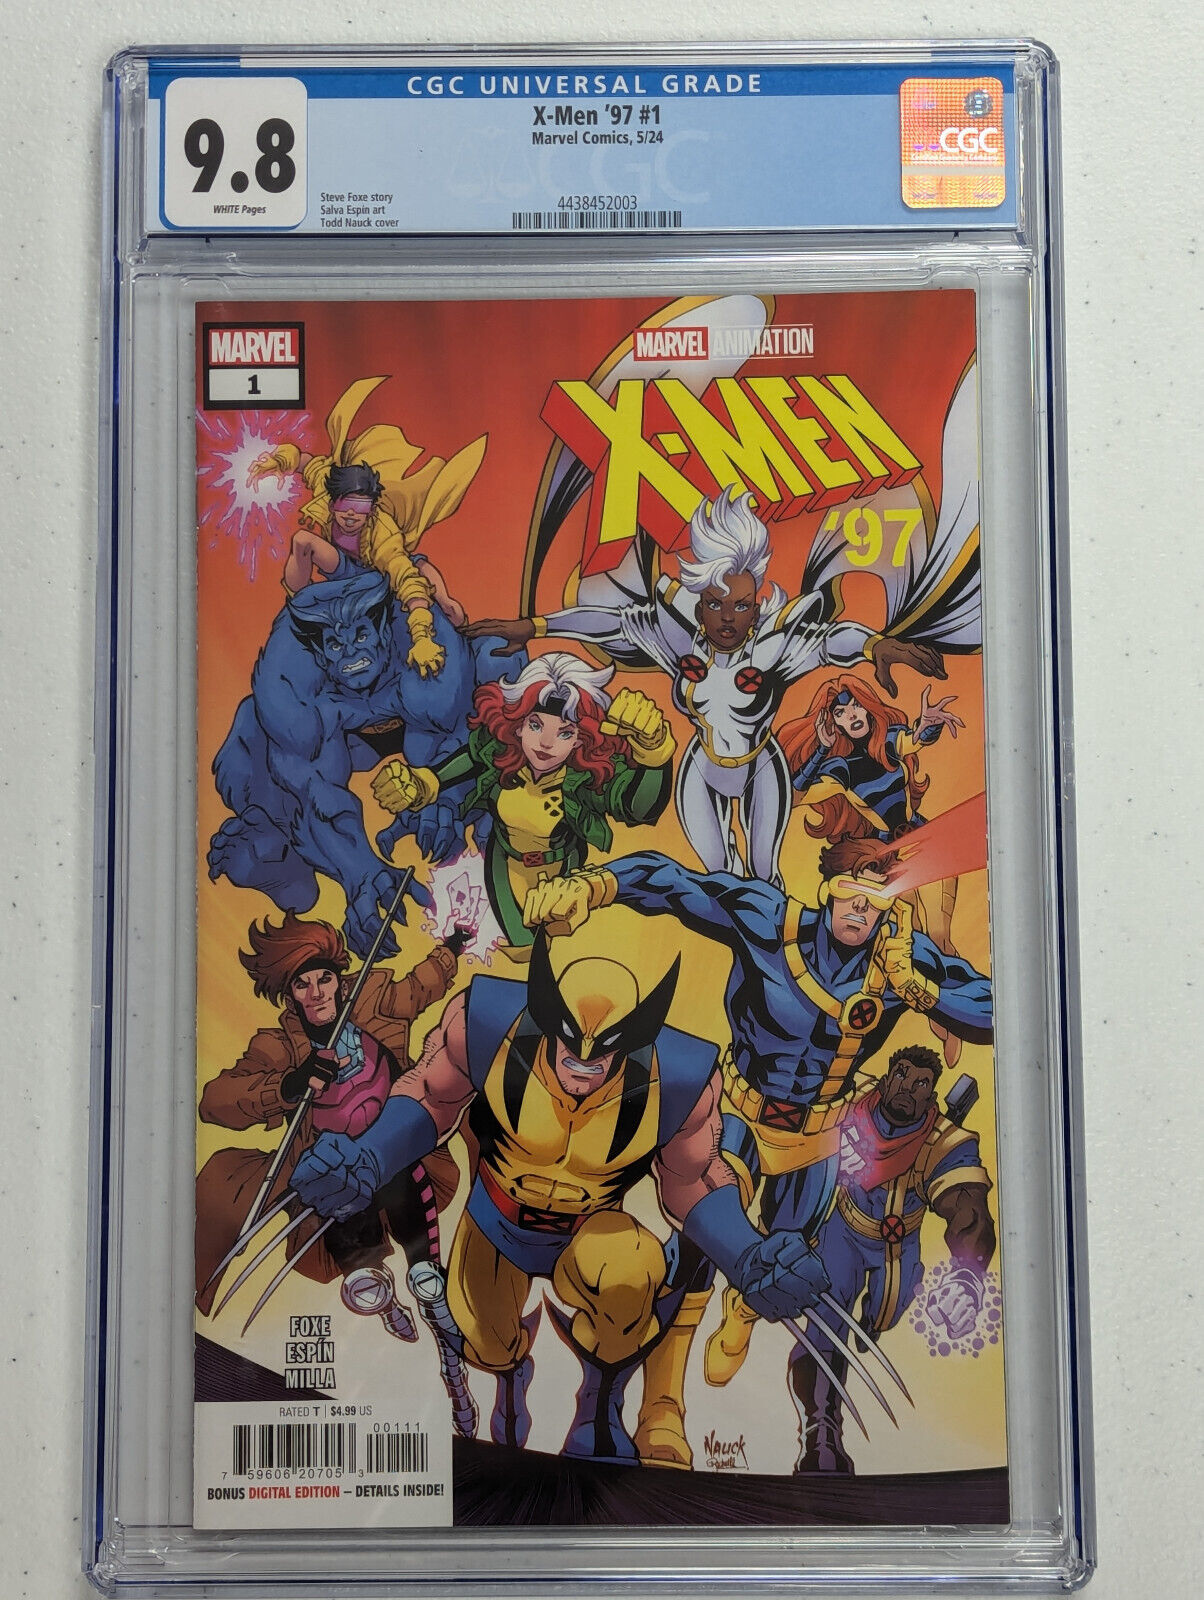 Marvel Comics - X-Men '97 #1 - Cover A - CGC 9.8